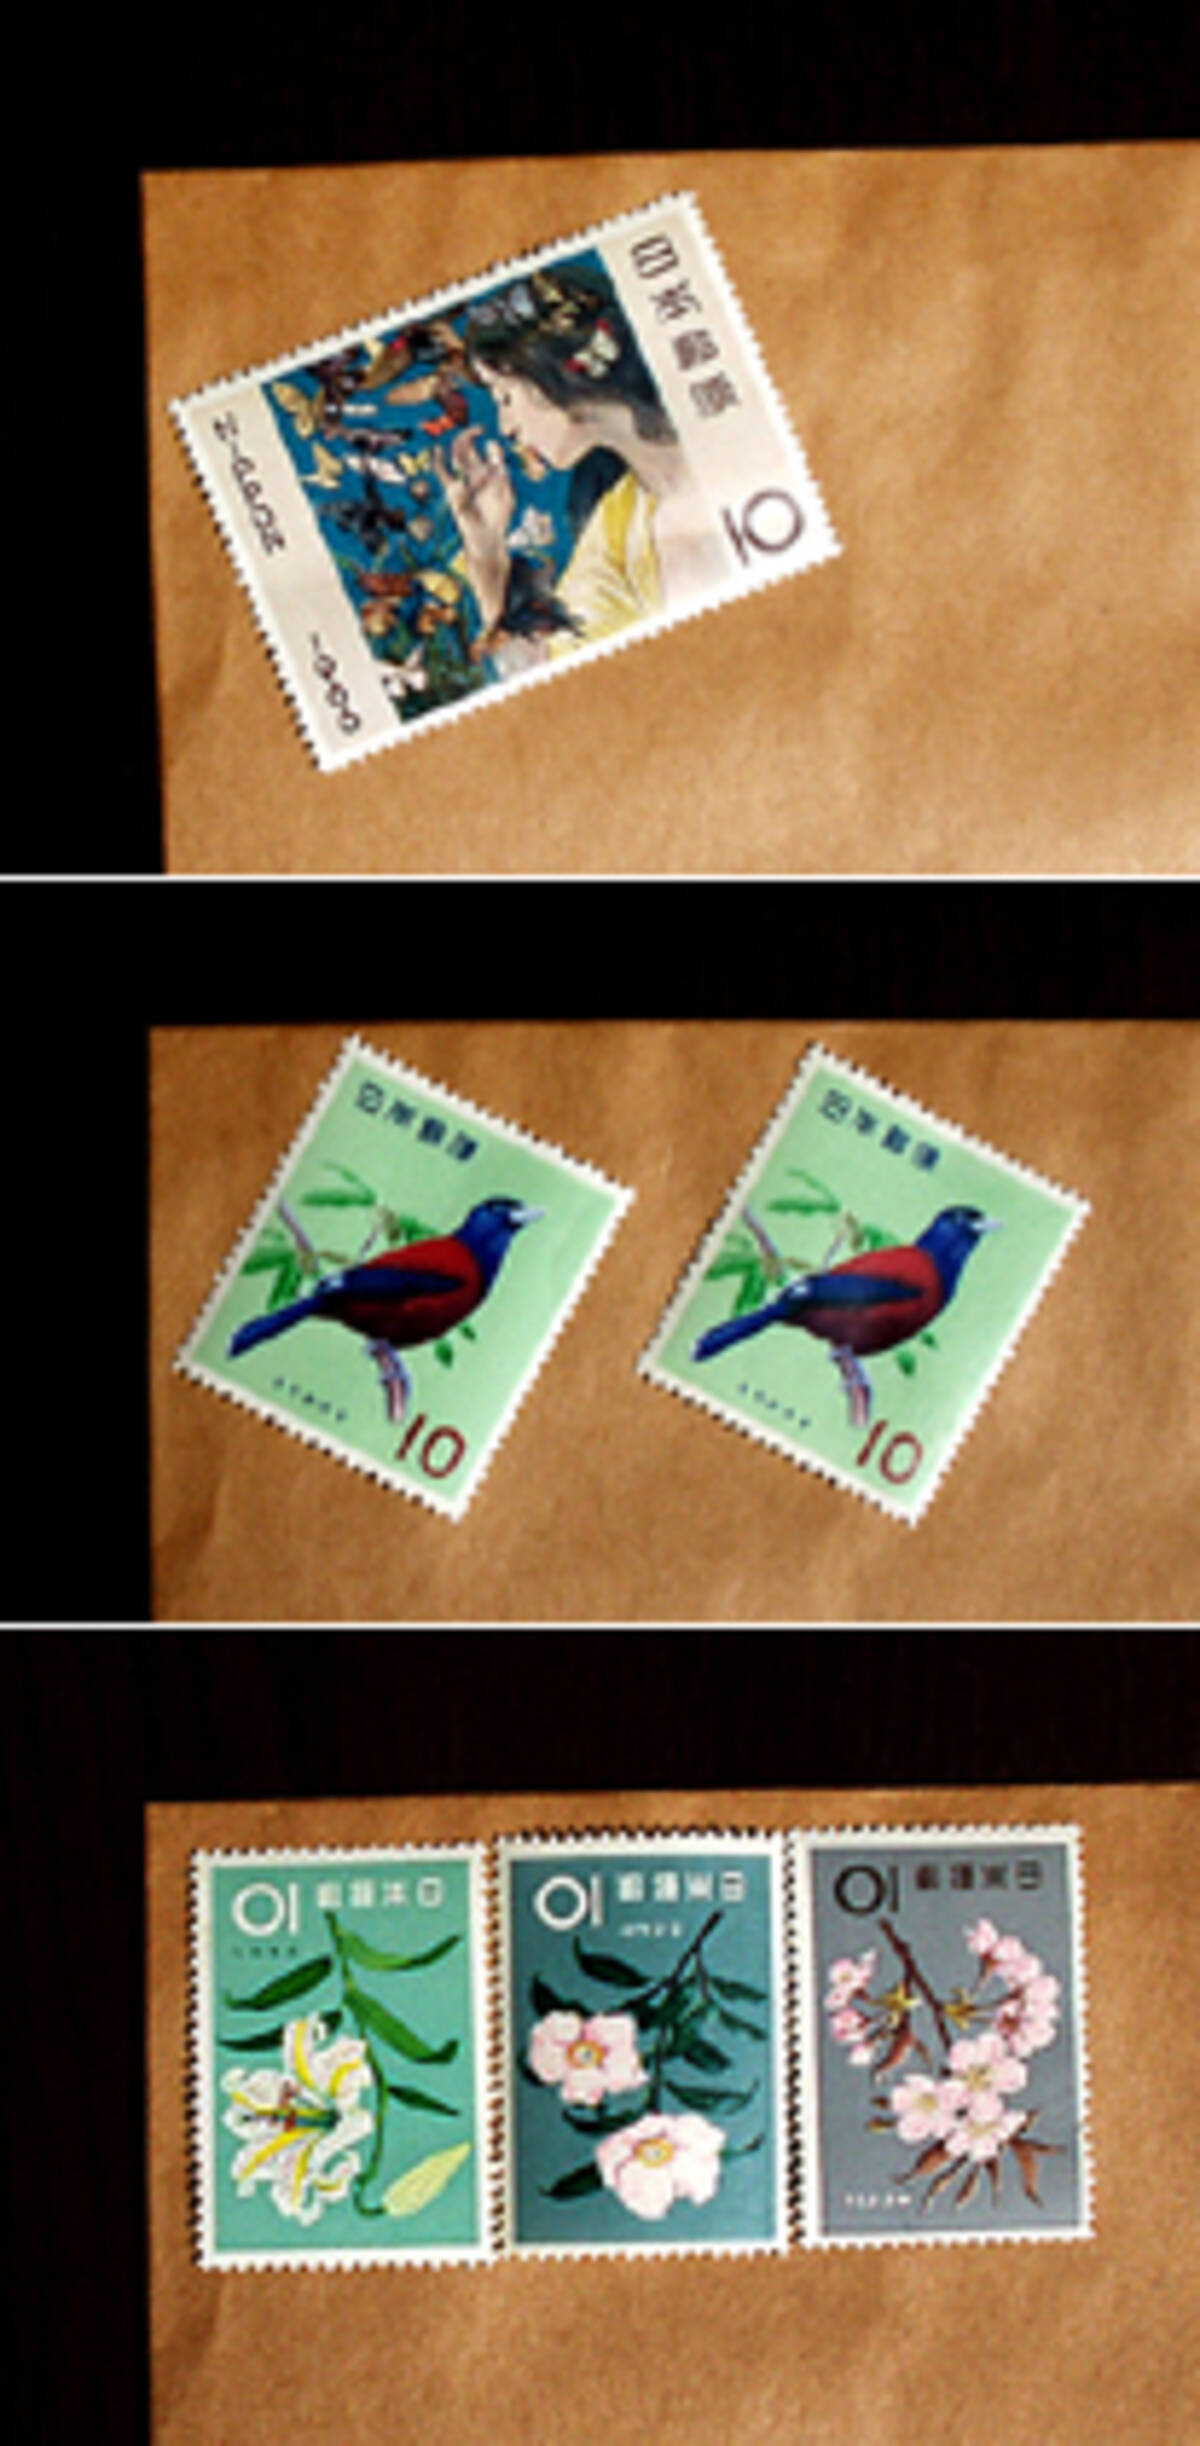 中国では切手の貼り方でメッセージを伝える 07年8月28日 エキサイトニュース